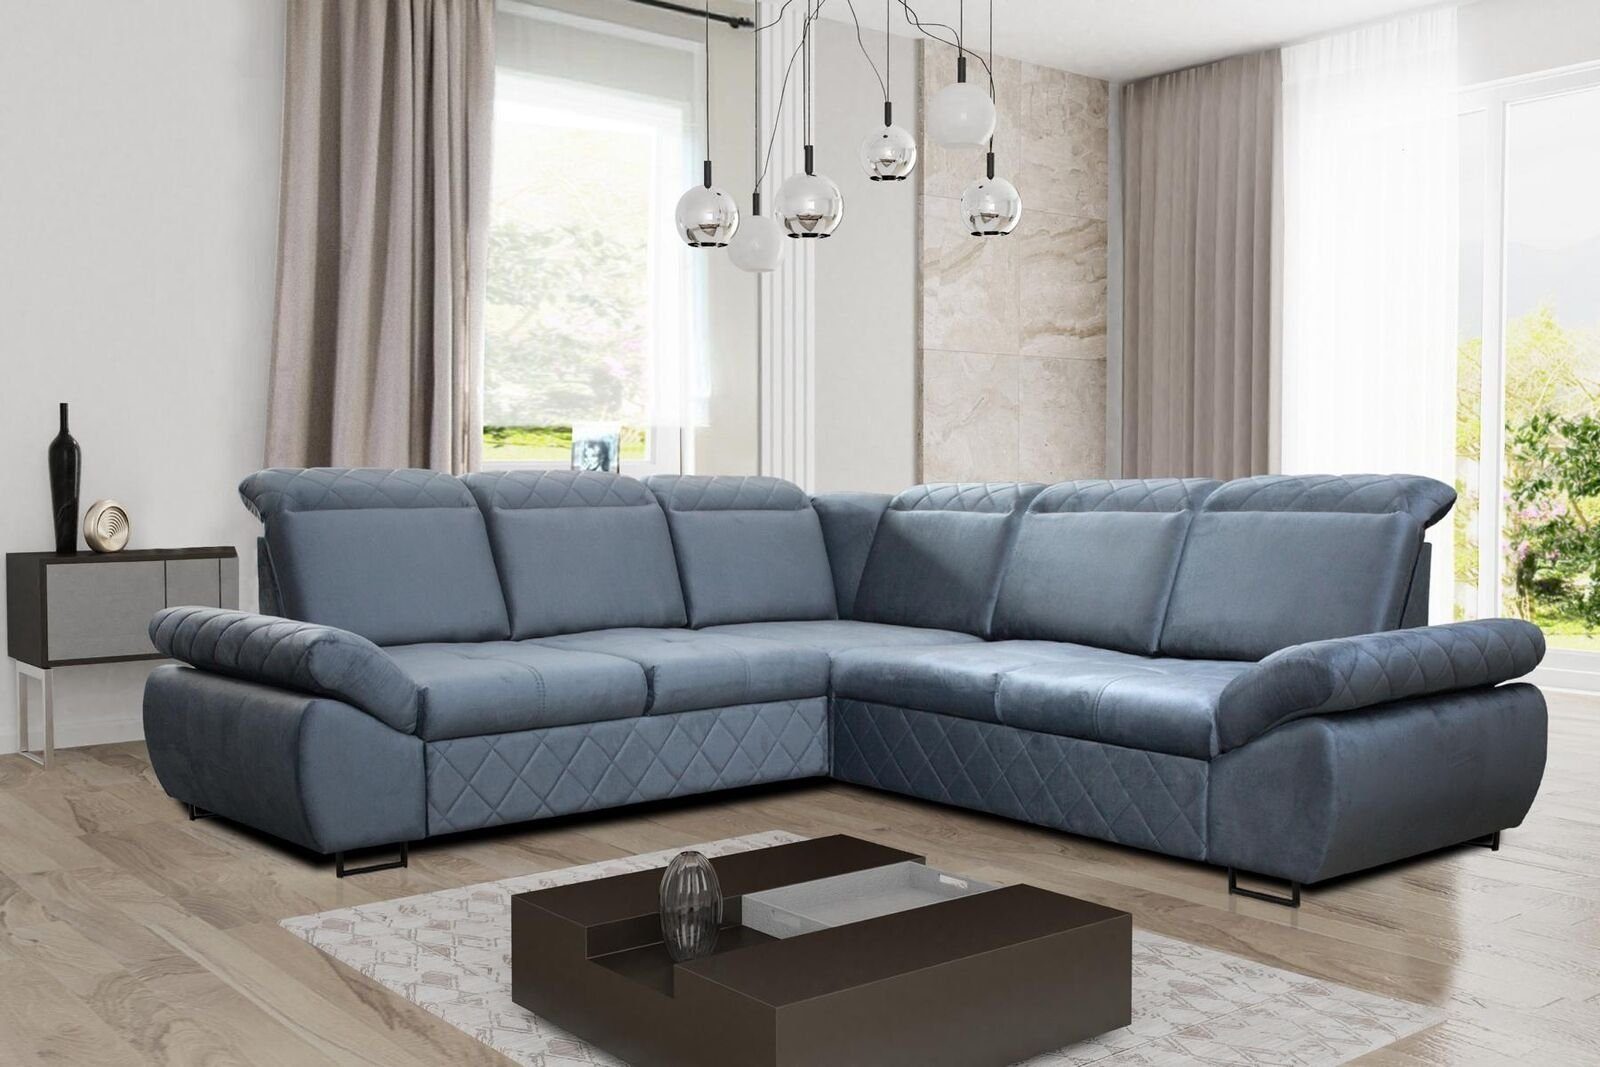 Design Wohnzimmer Bettfunktion JVmoebel Neu LForm Sofas Textil Moderne Mit Ecksofa Möbel Ecksofa, Couchs Blau